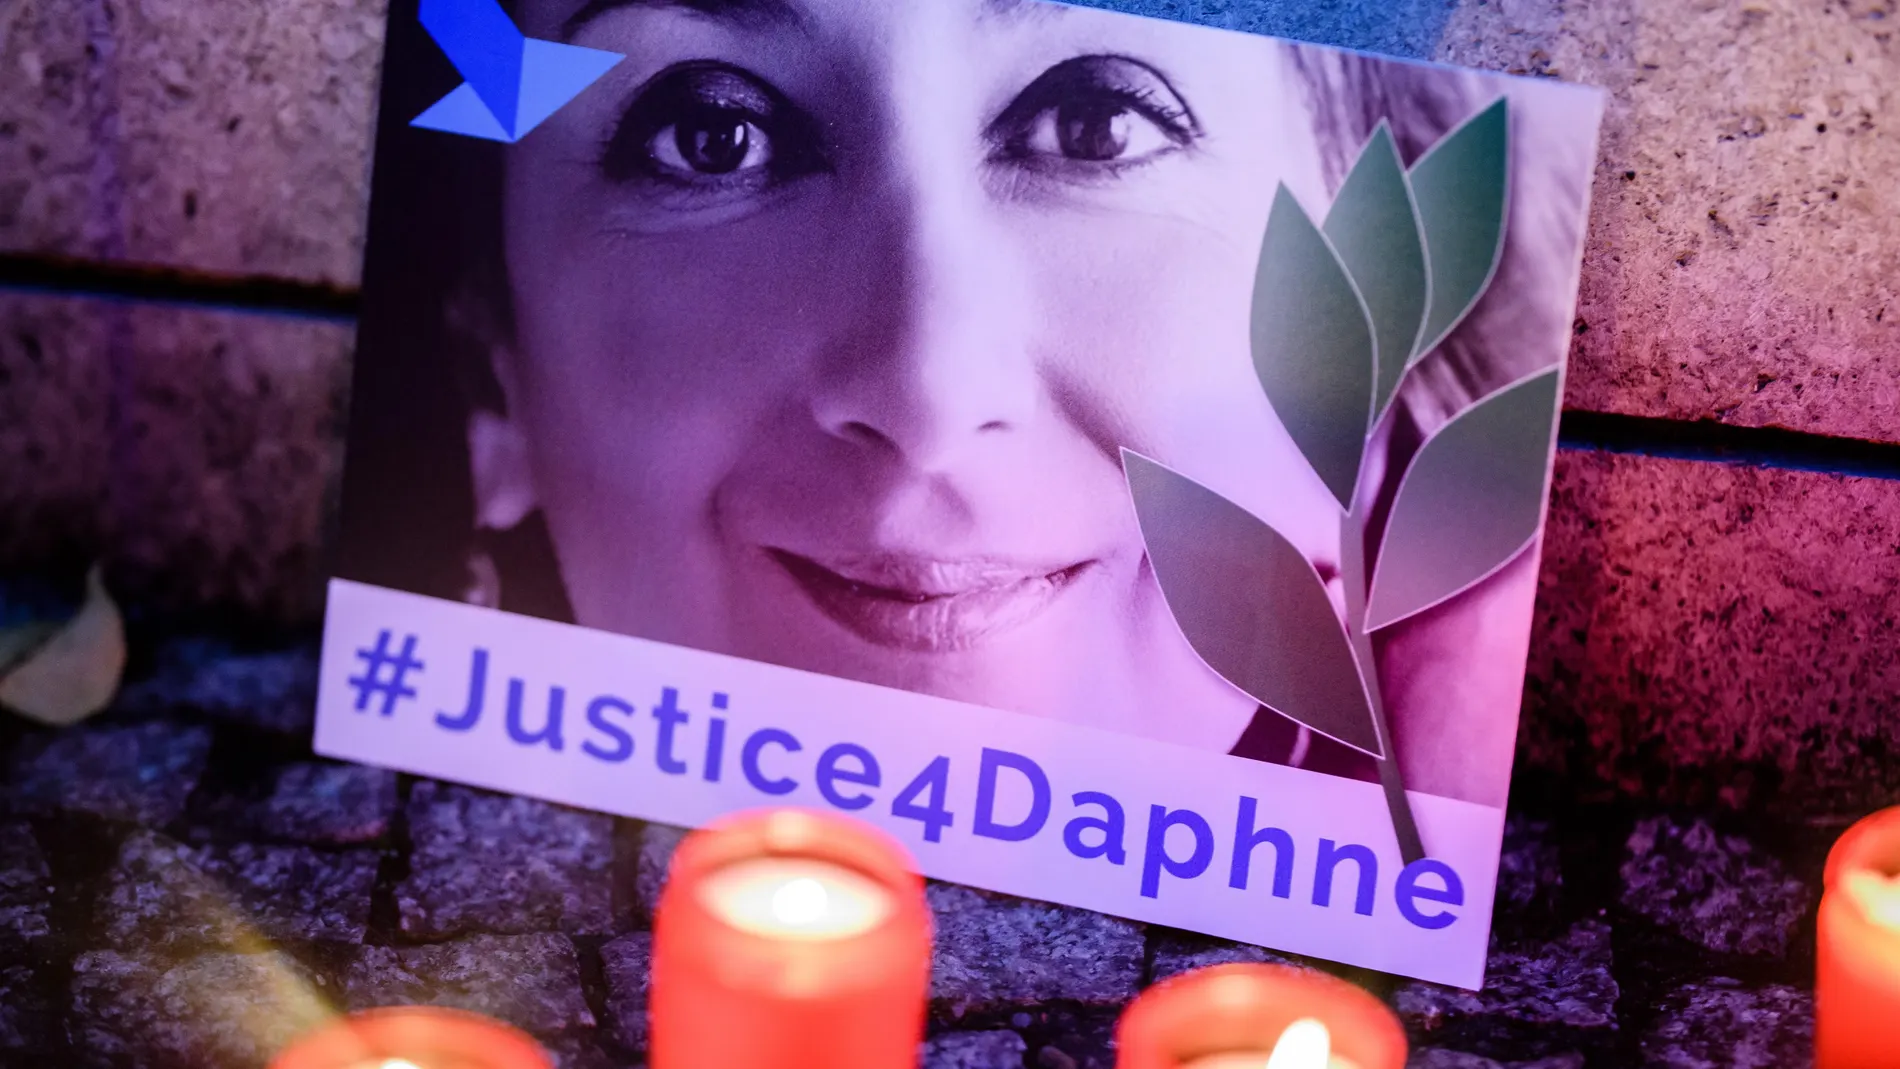 Daphne Caruana Galizia murder case